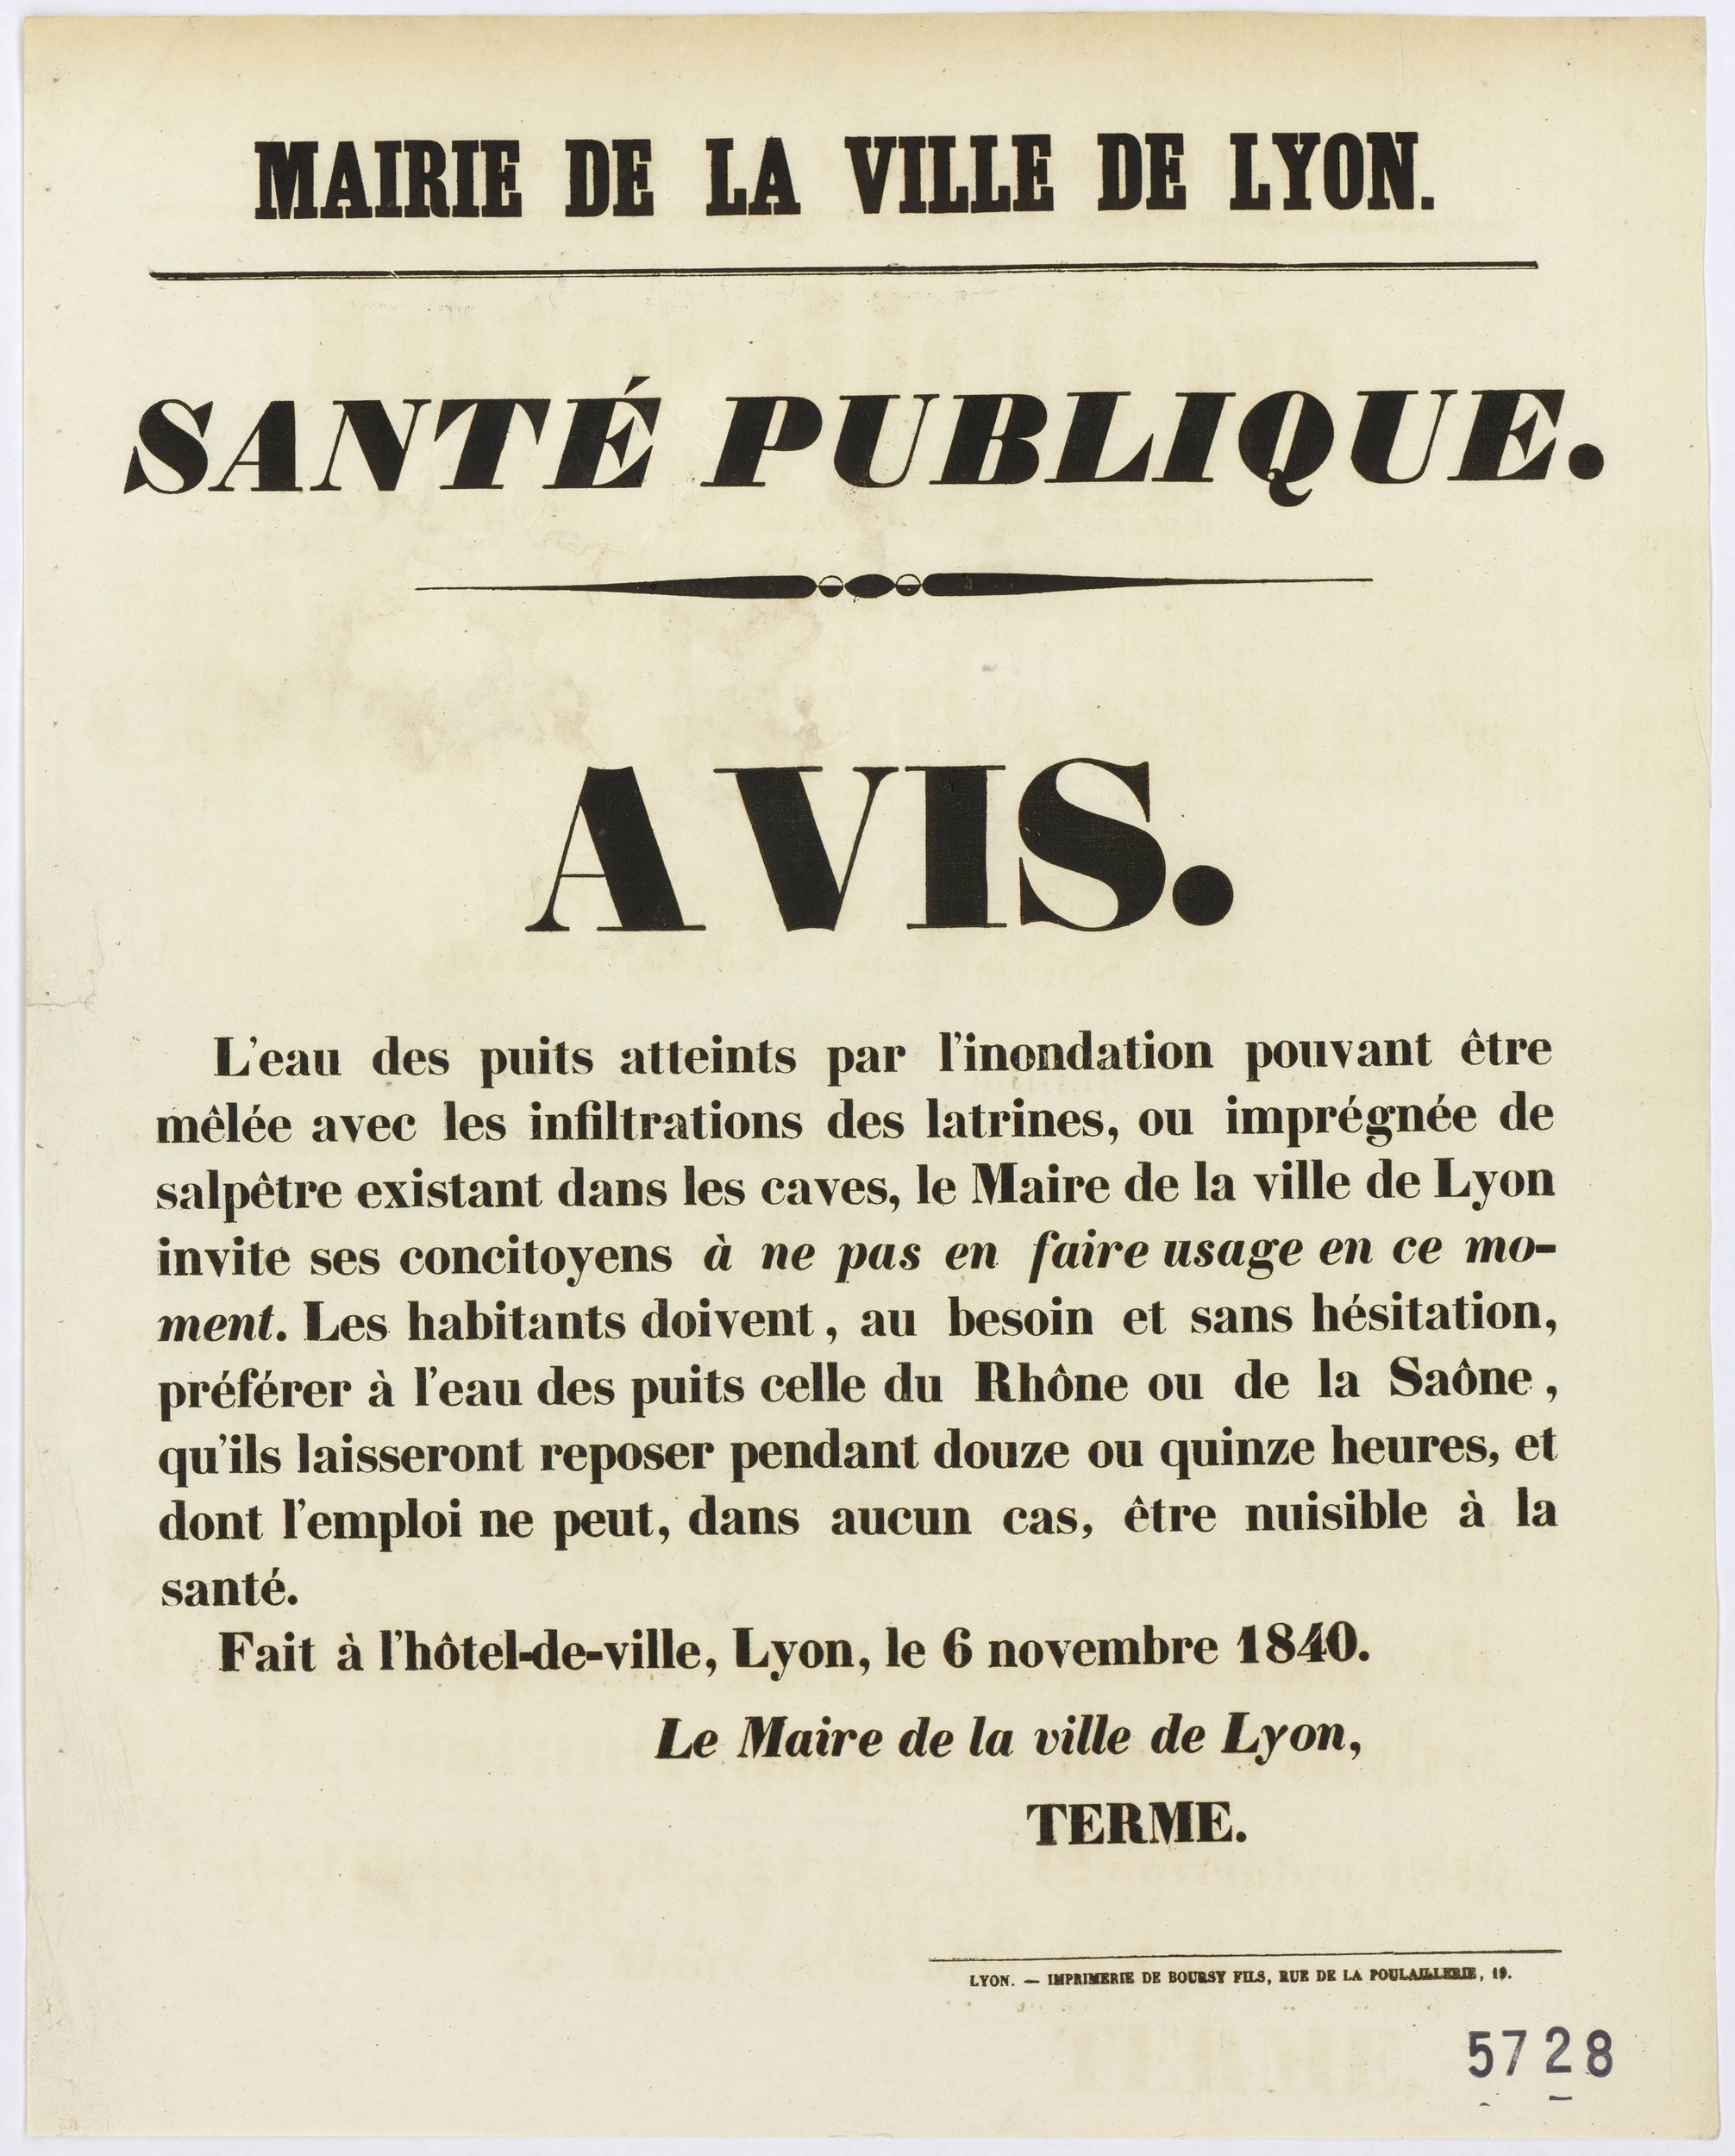 Crues du Rhône et de la Saône de novembre 1840 : avis de la mairie de la ville de Lyon, ne pas utiliser l'eau des puits en ce moment (06/11/1840, cote : 936W5728)